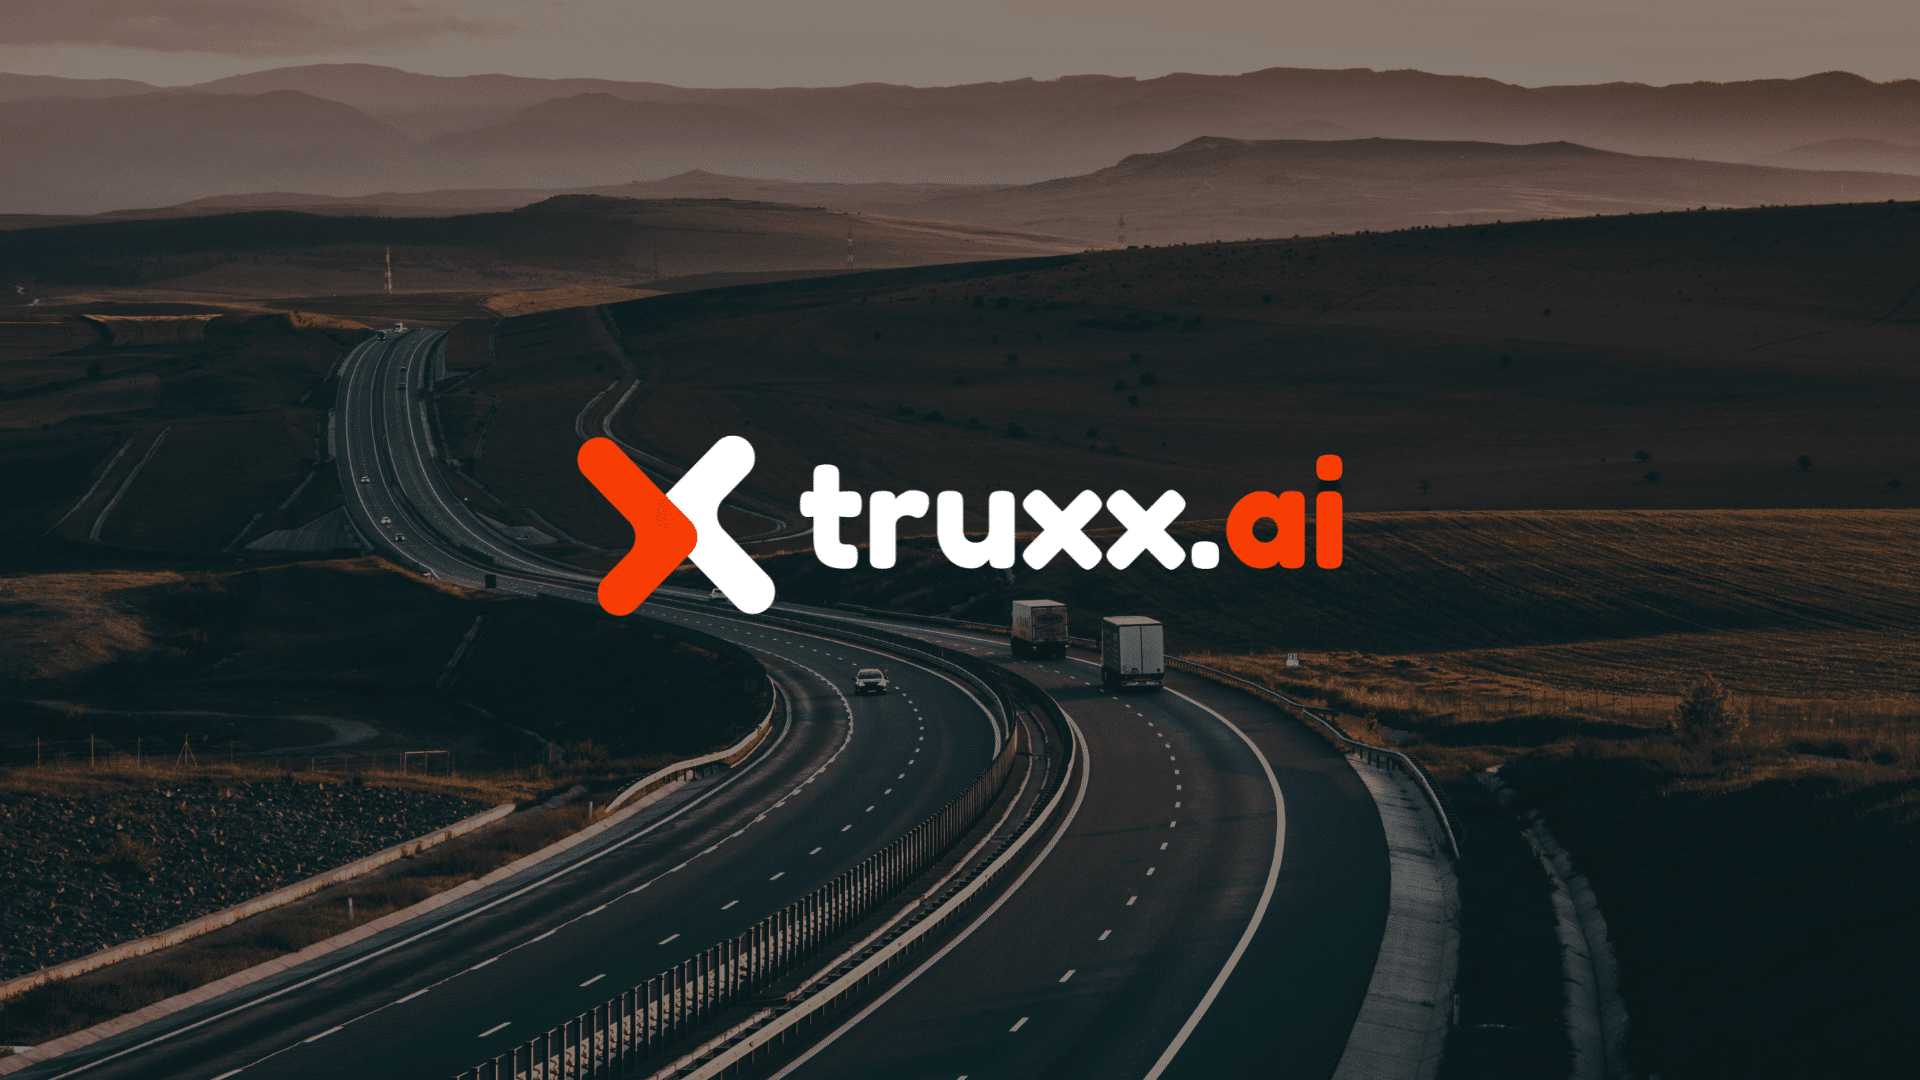 Truxx.ai Brand Strategy